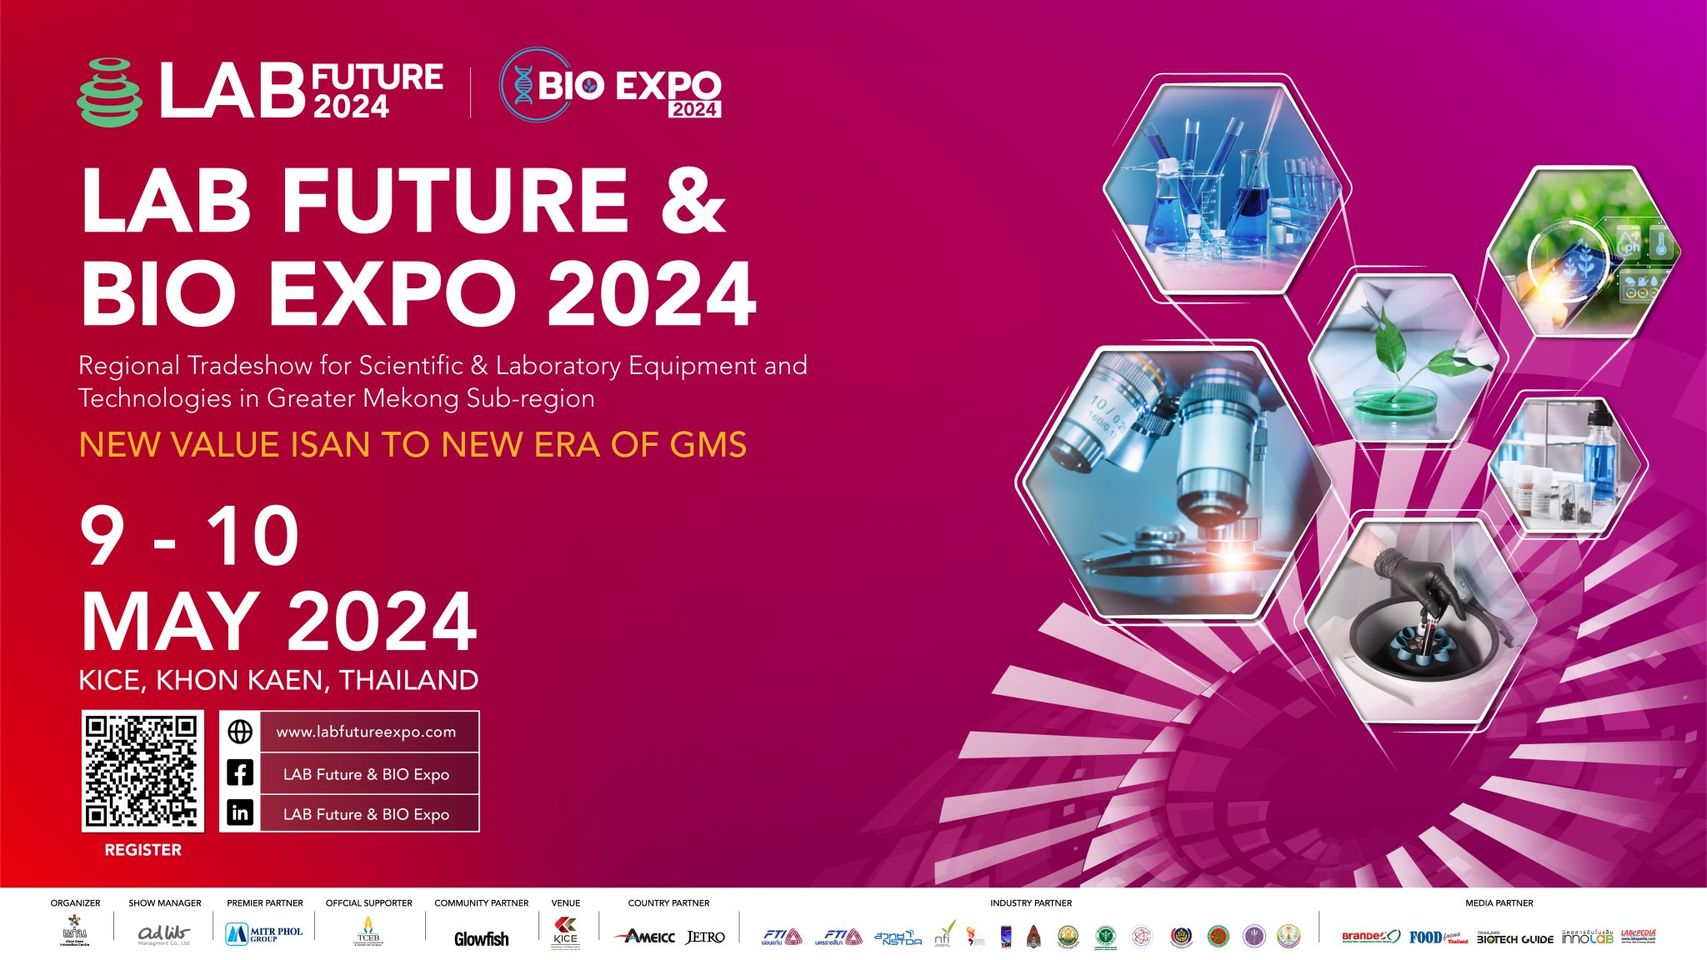 สำนักงานพาณิชย์จังหวัดขอนแก่น  ขอเรียนเชิญเข้าร่วมงานแสดงสินค้า LAB Future & BIO Expo 2024 ขอนแก่น